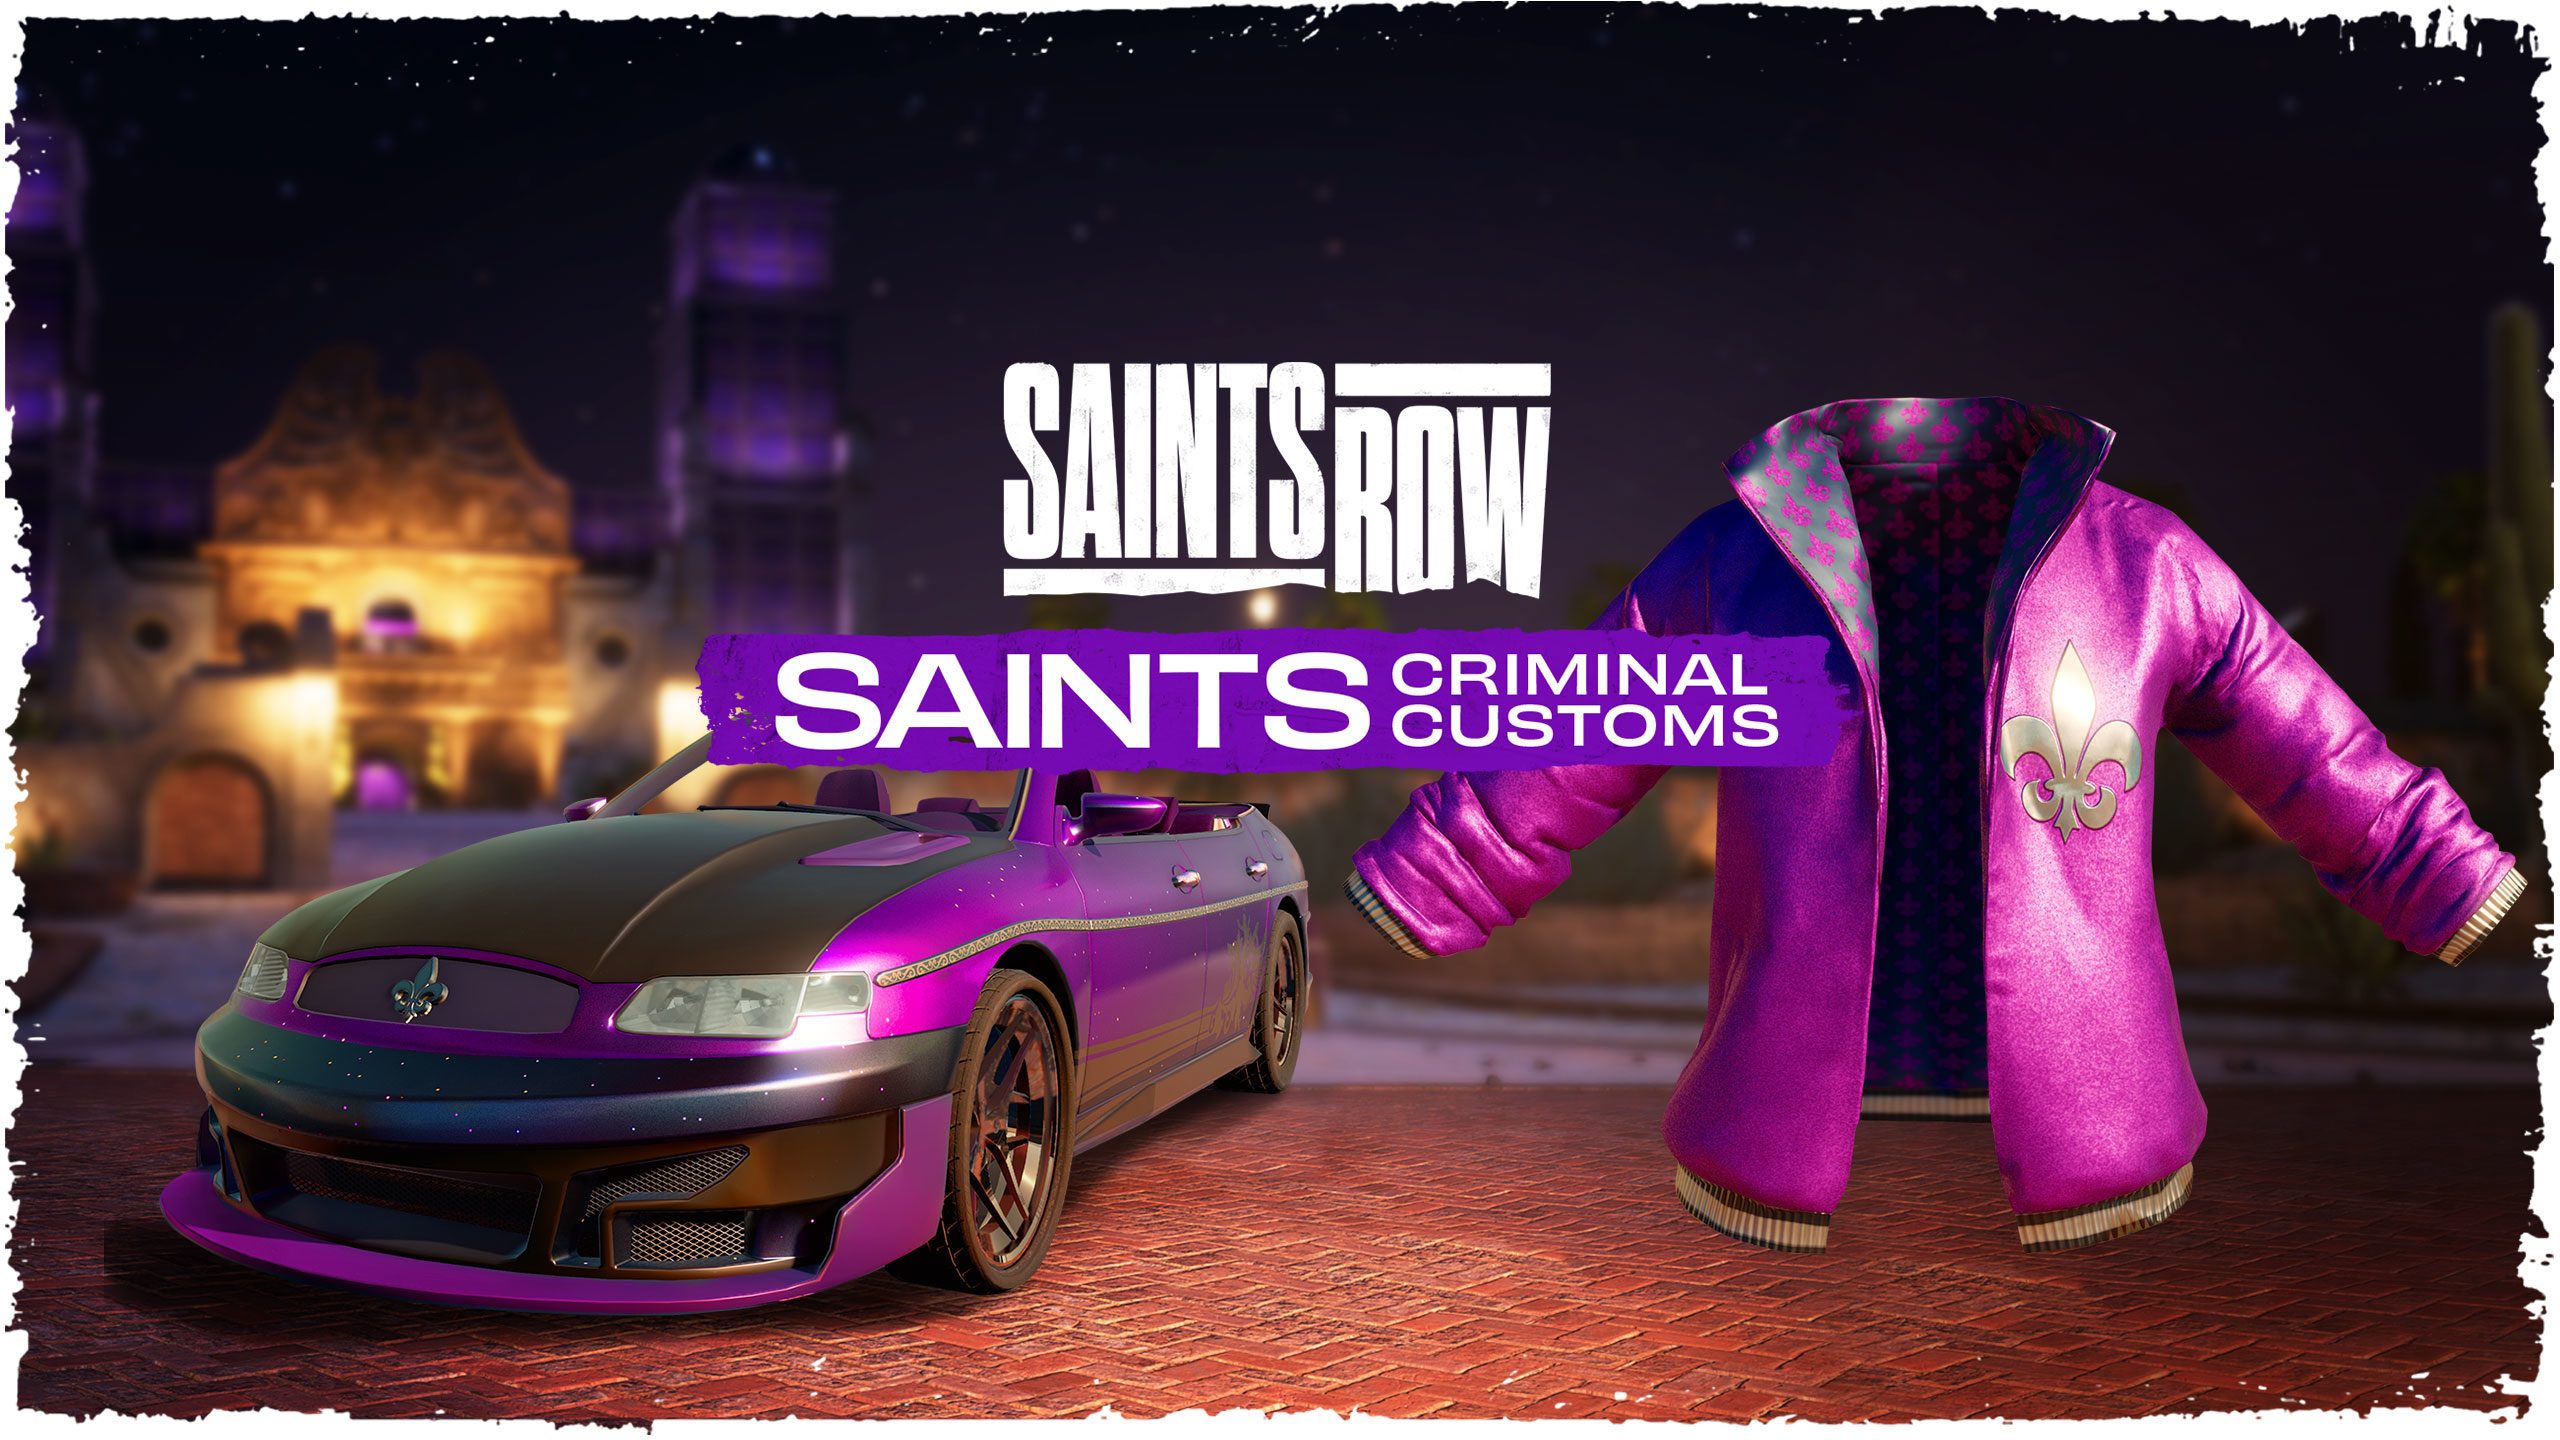 Saints Row Saints Criminal Customs Edition Epic Games CD Key USD 68.2